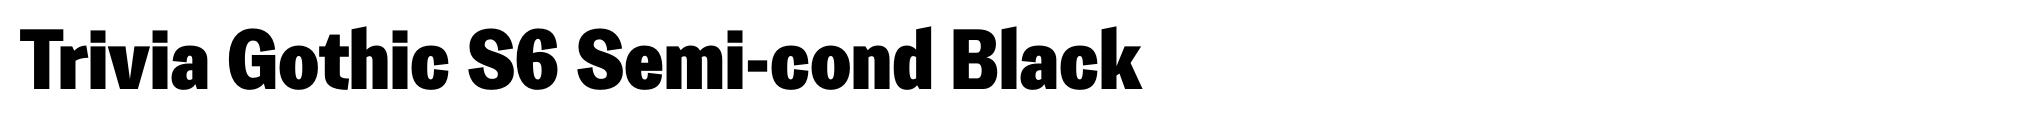 Trivia Gothic S6 Semi-cond Black image